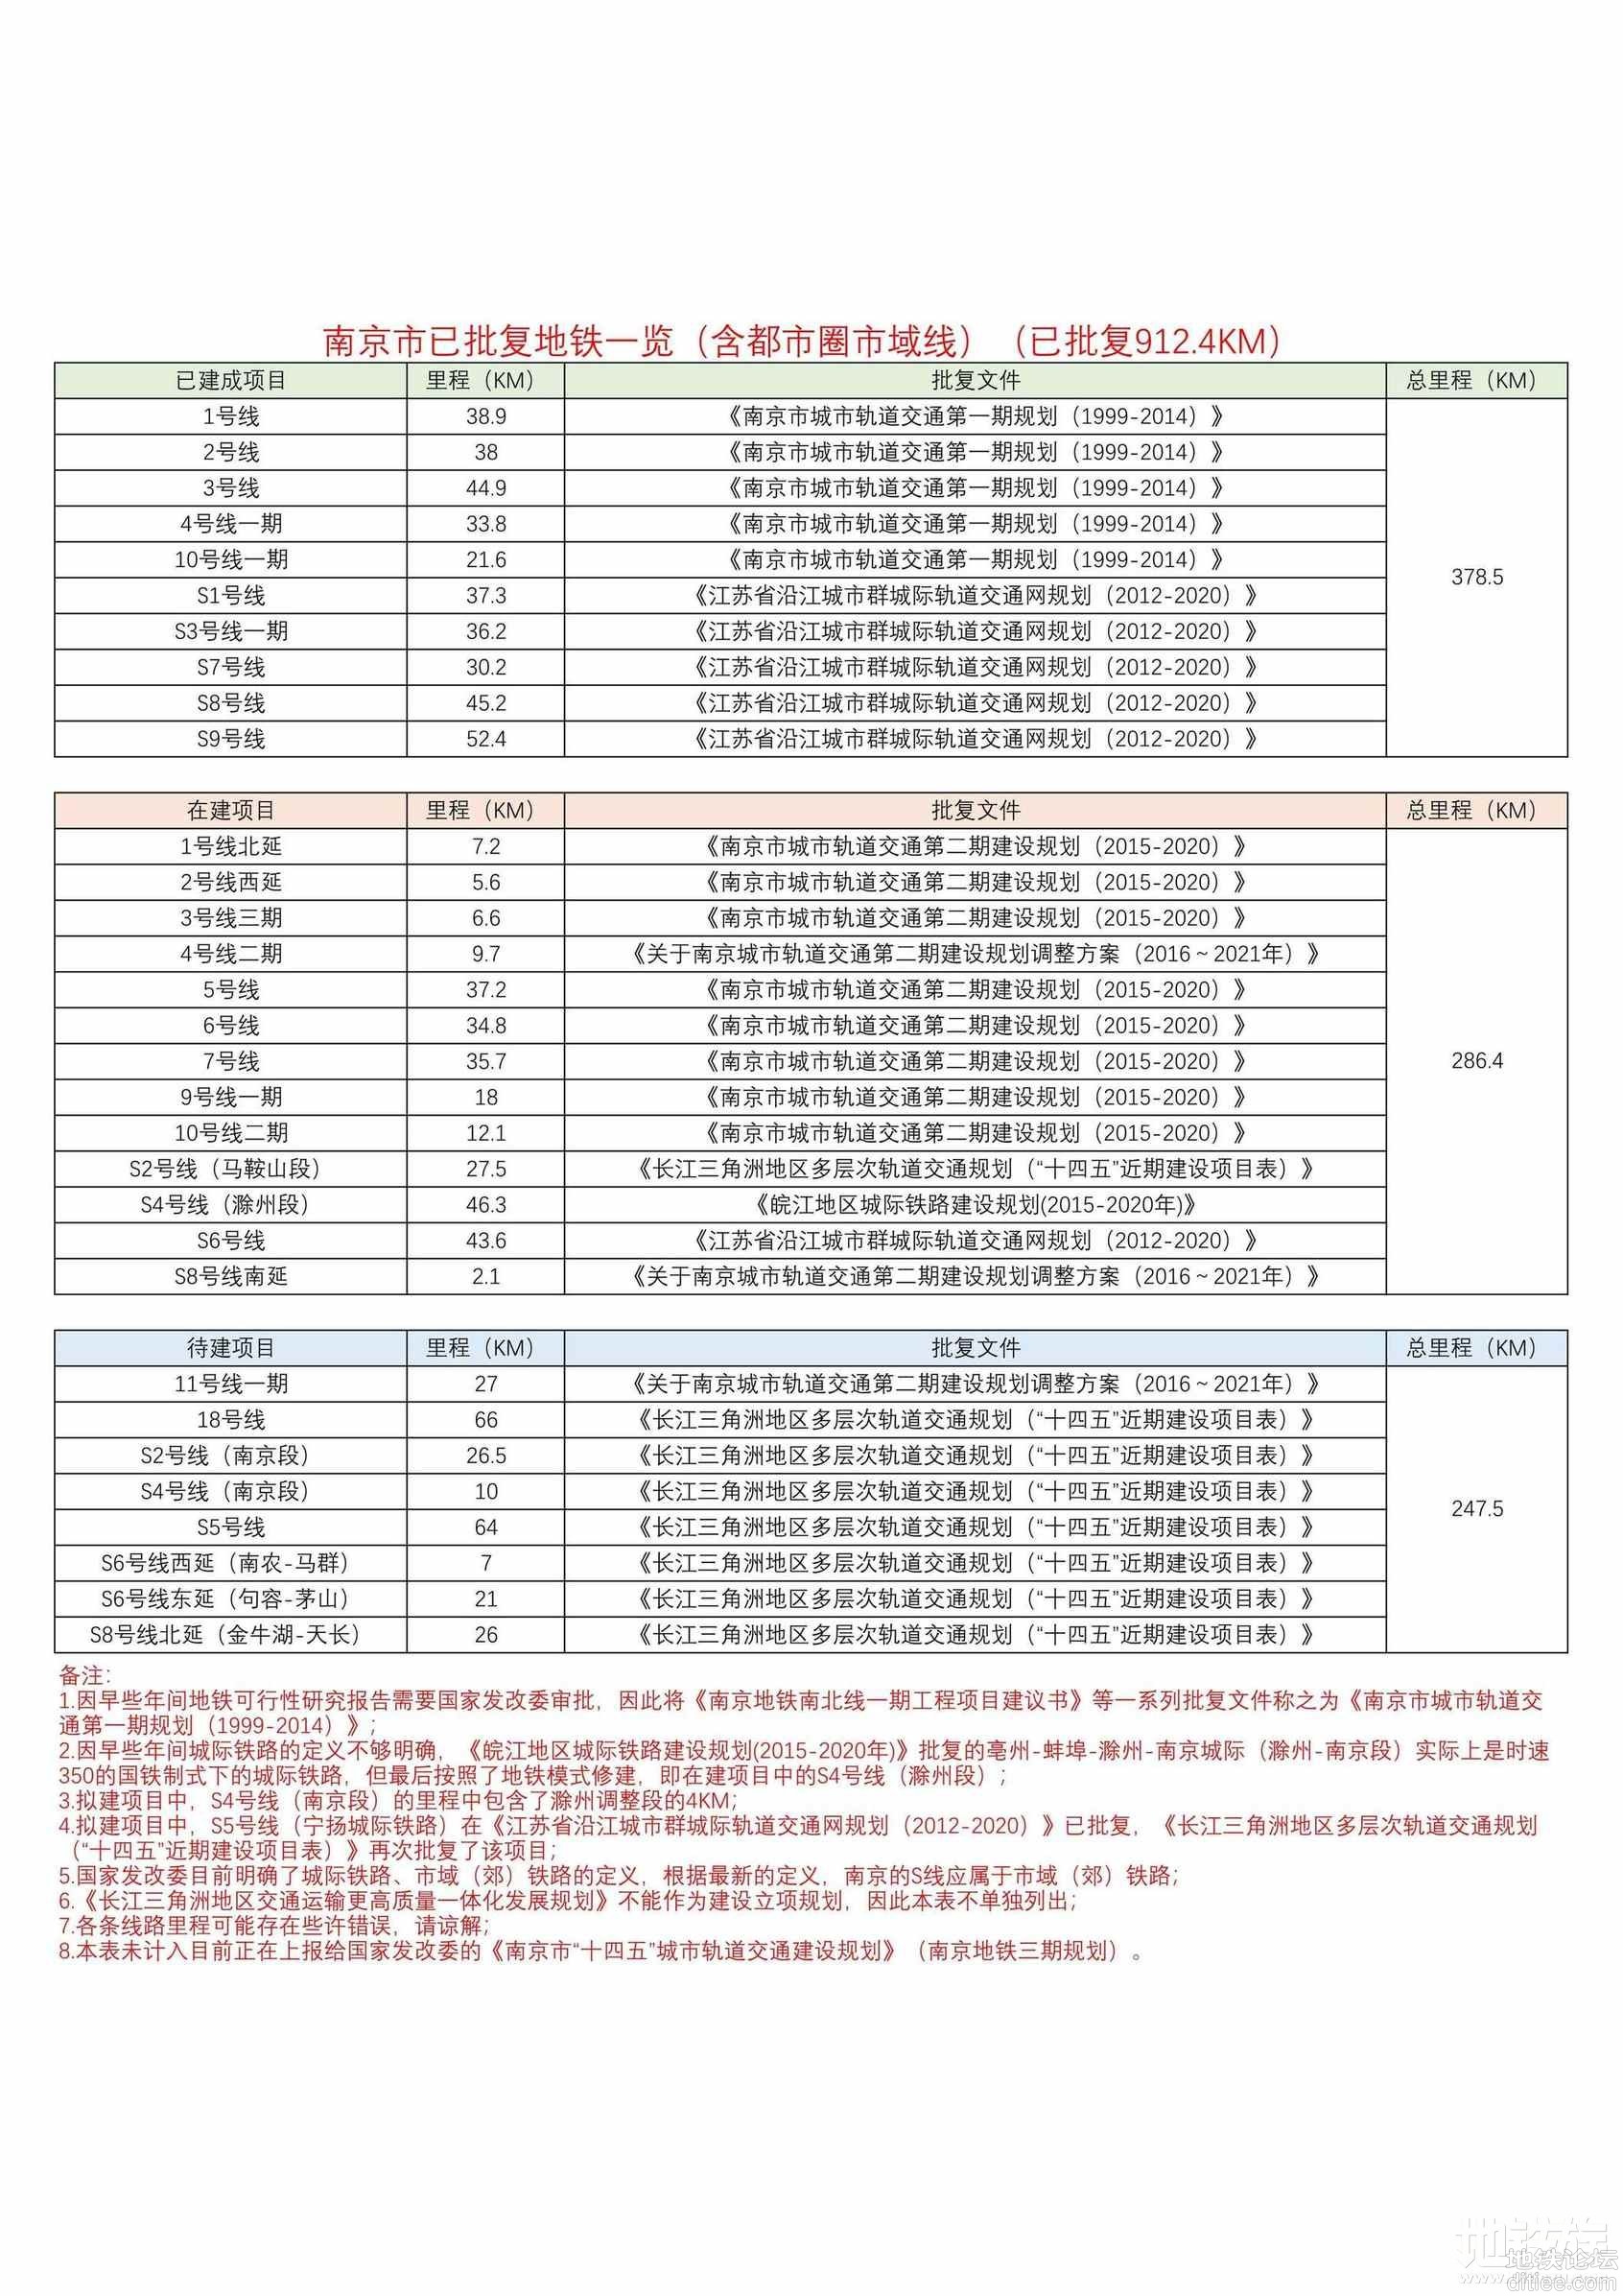 [转]南京地铁已批复线路统计表